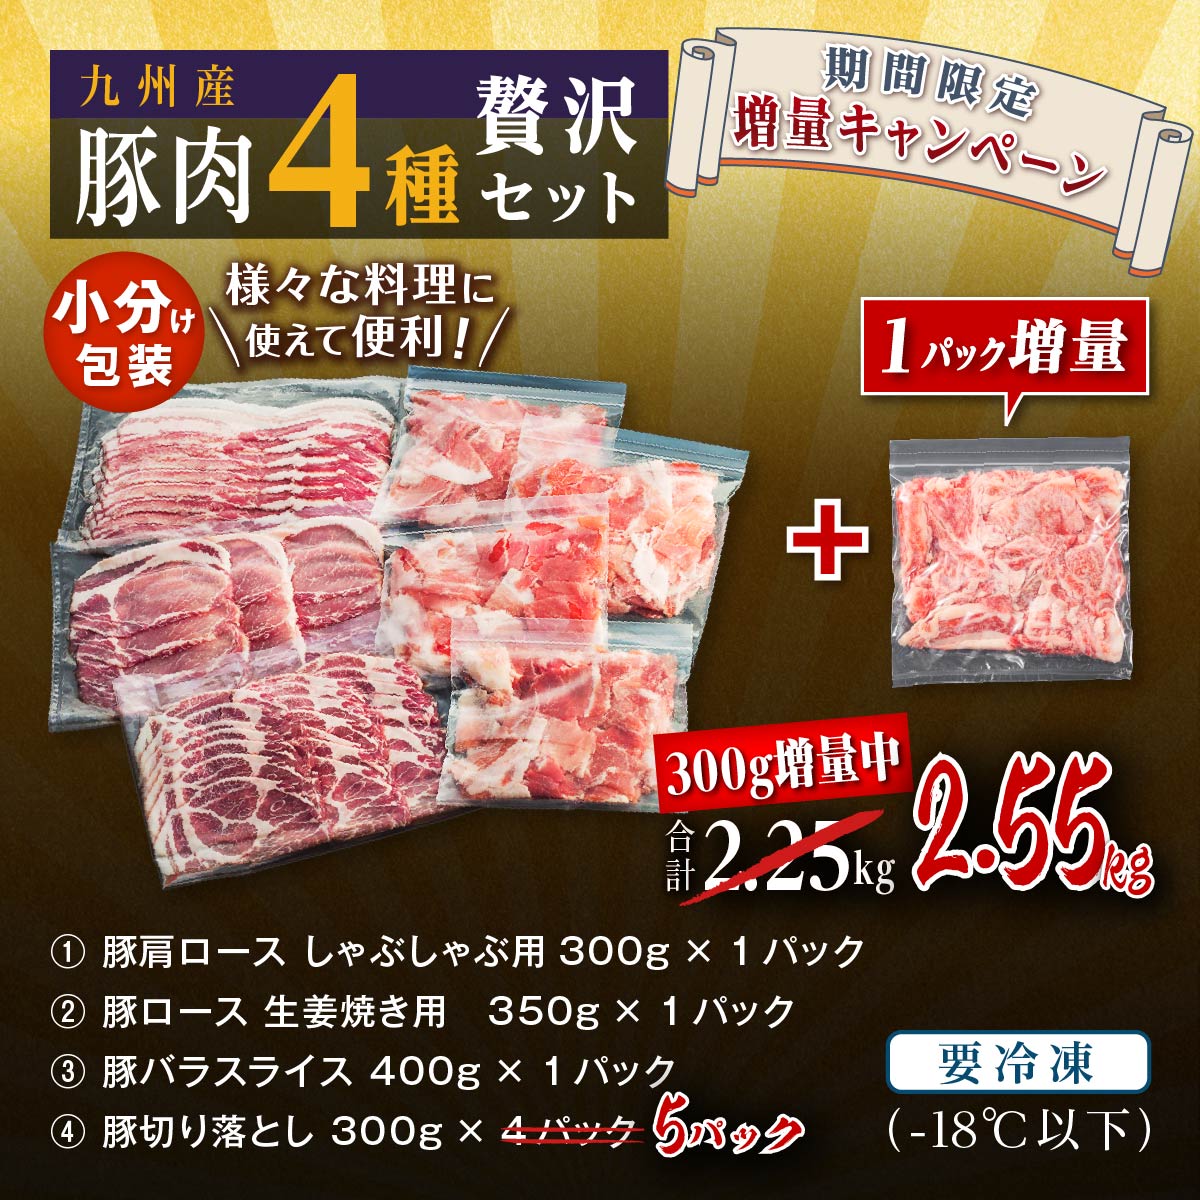 注目ショップ・ブランドのギフト 九州産 豚ローススライス 計900g 300g×3パック 豚肉 国産 国内産